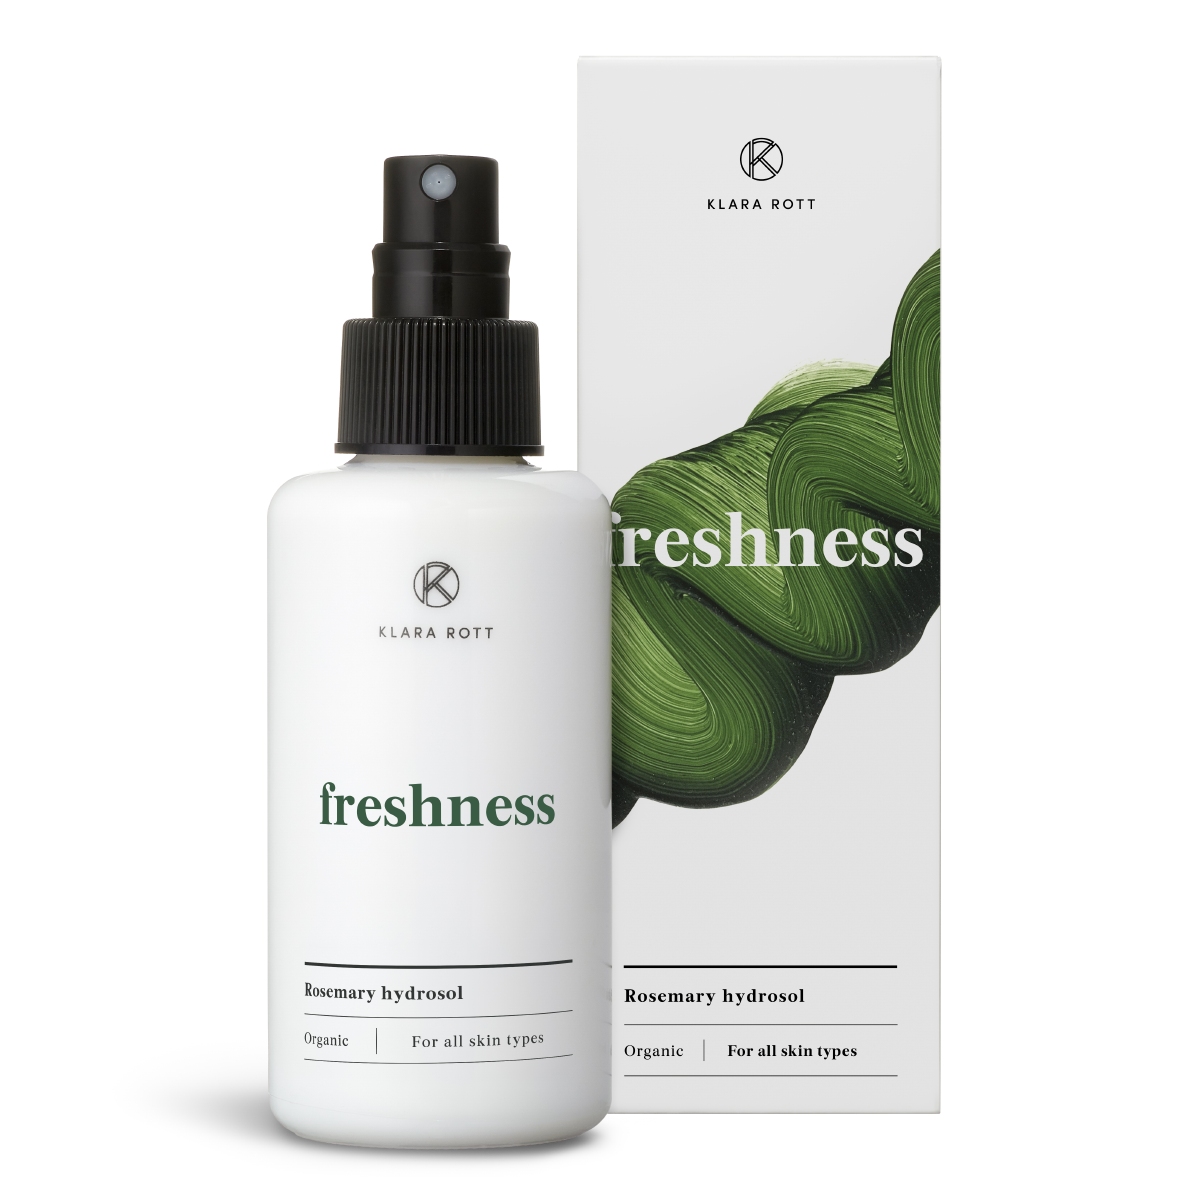 Freshness - Rosemary hydrosol 